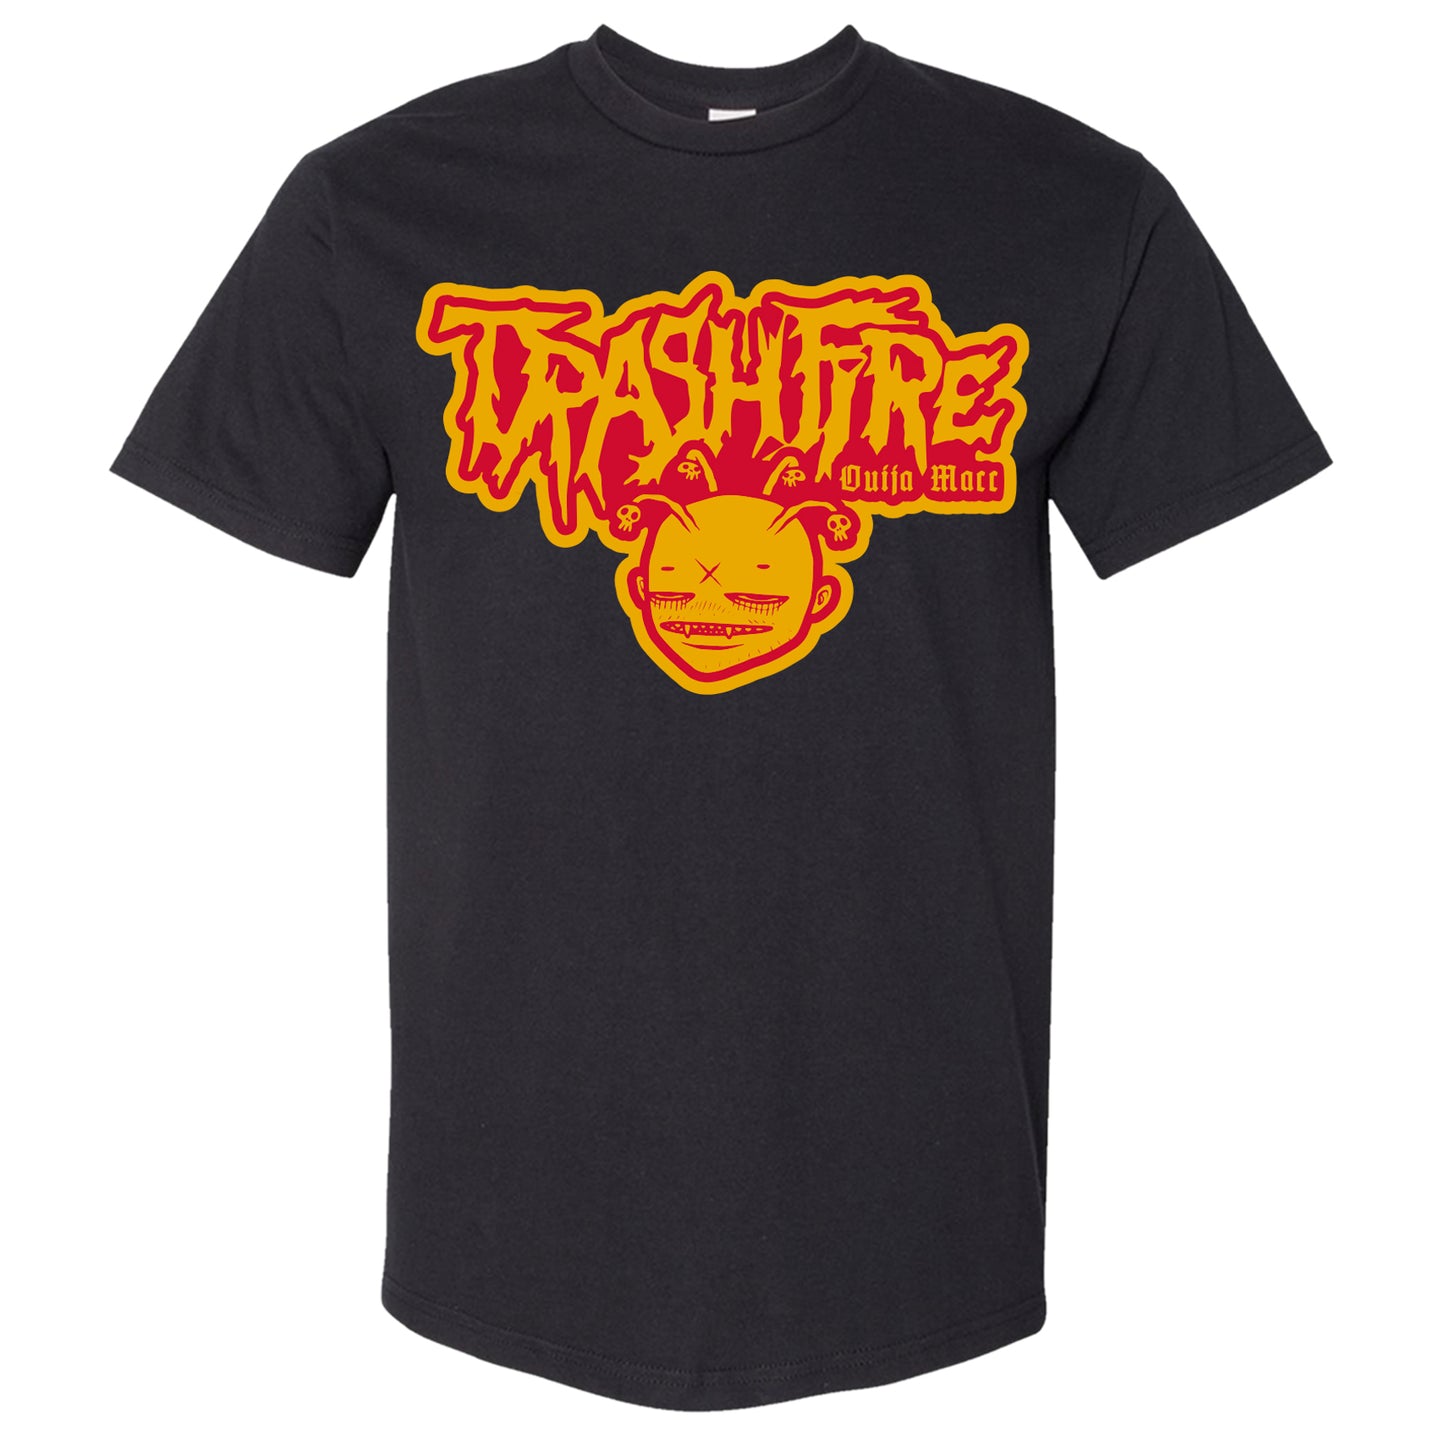 Trashfire - Logo tee in Black